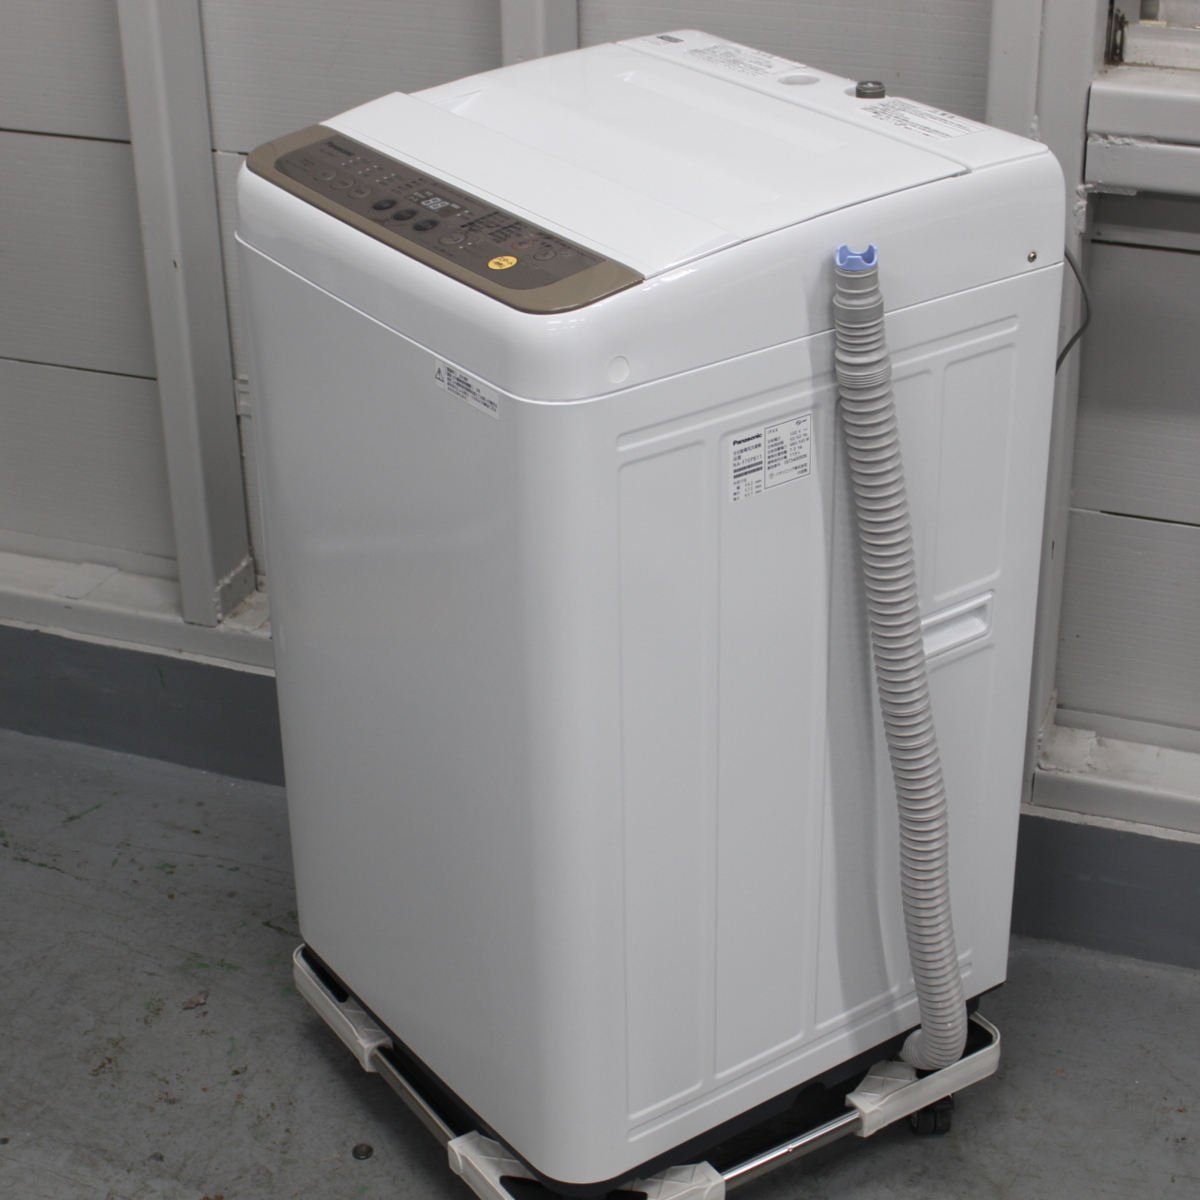 パナソニック 全自動洗濯機 洗濯機 NA-F70PB11 Panasonic 2018年製 7kg 